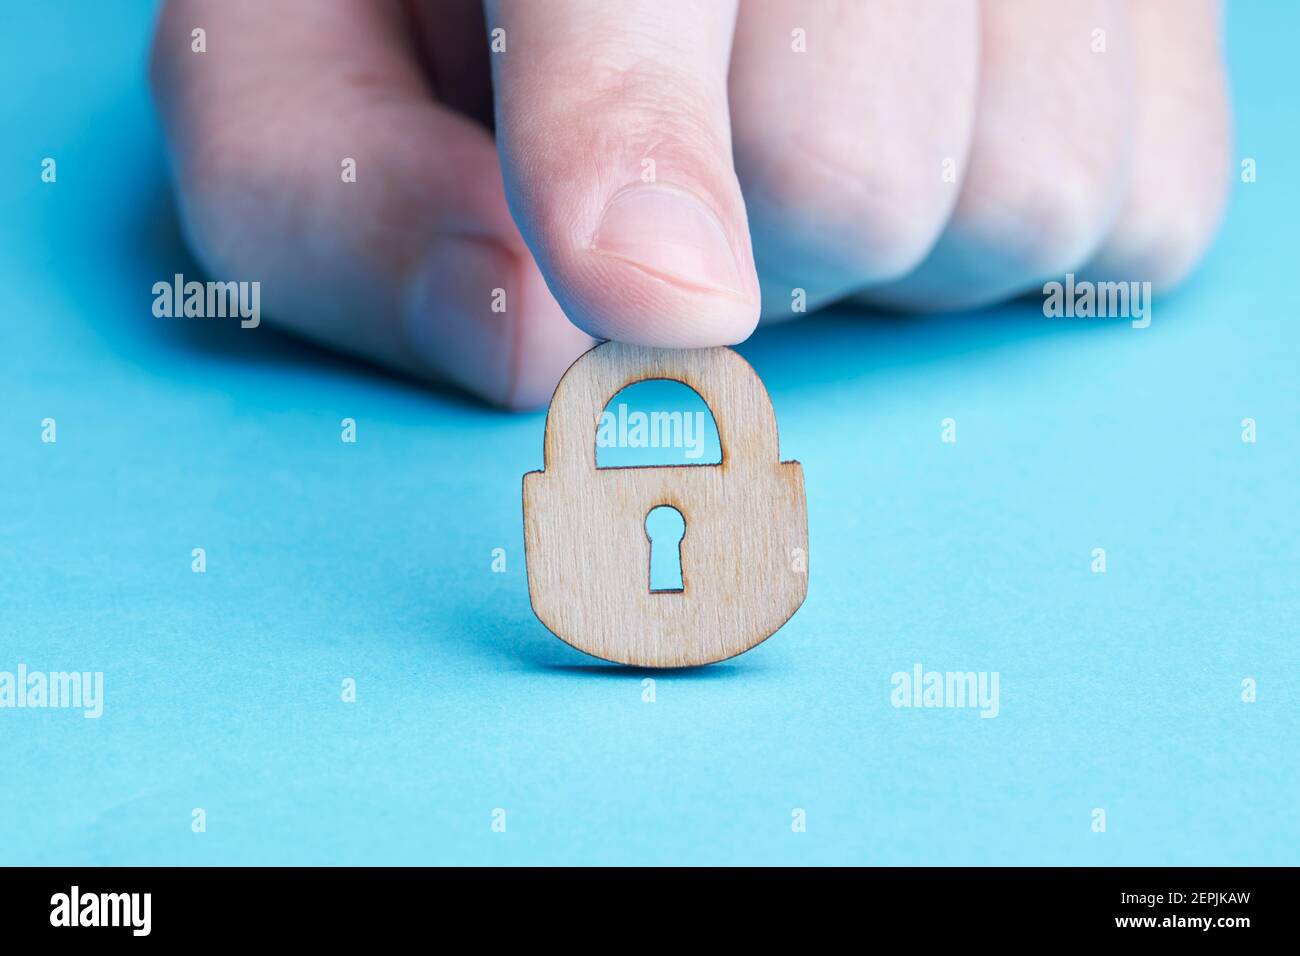 concept de confidentialité et de sécurité de la personne. personne caucasienne tient un cadenas en bois sur fond bleu. espace de copie Banque D'Images